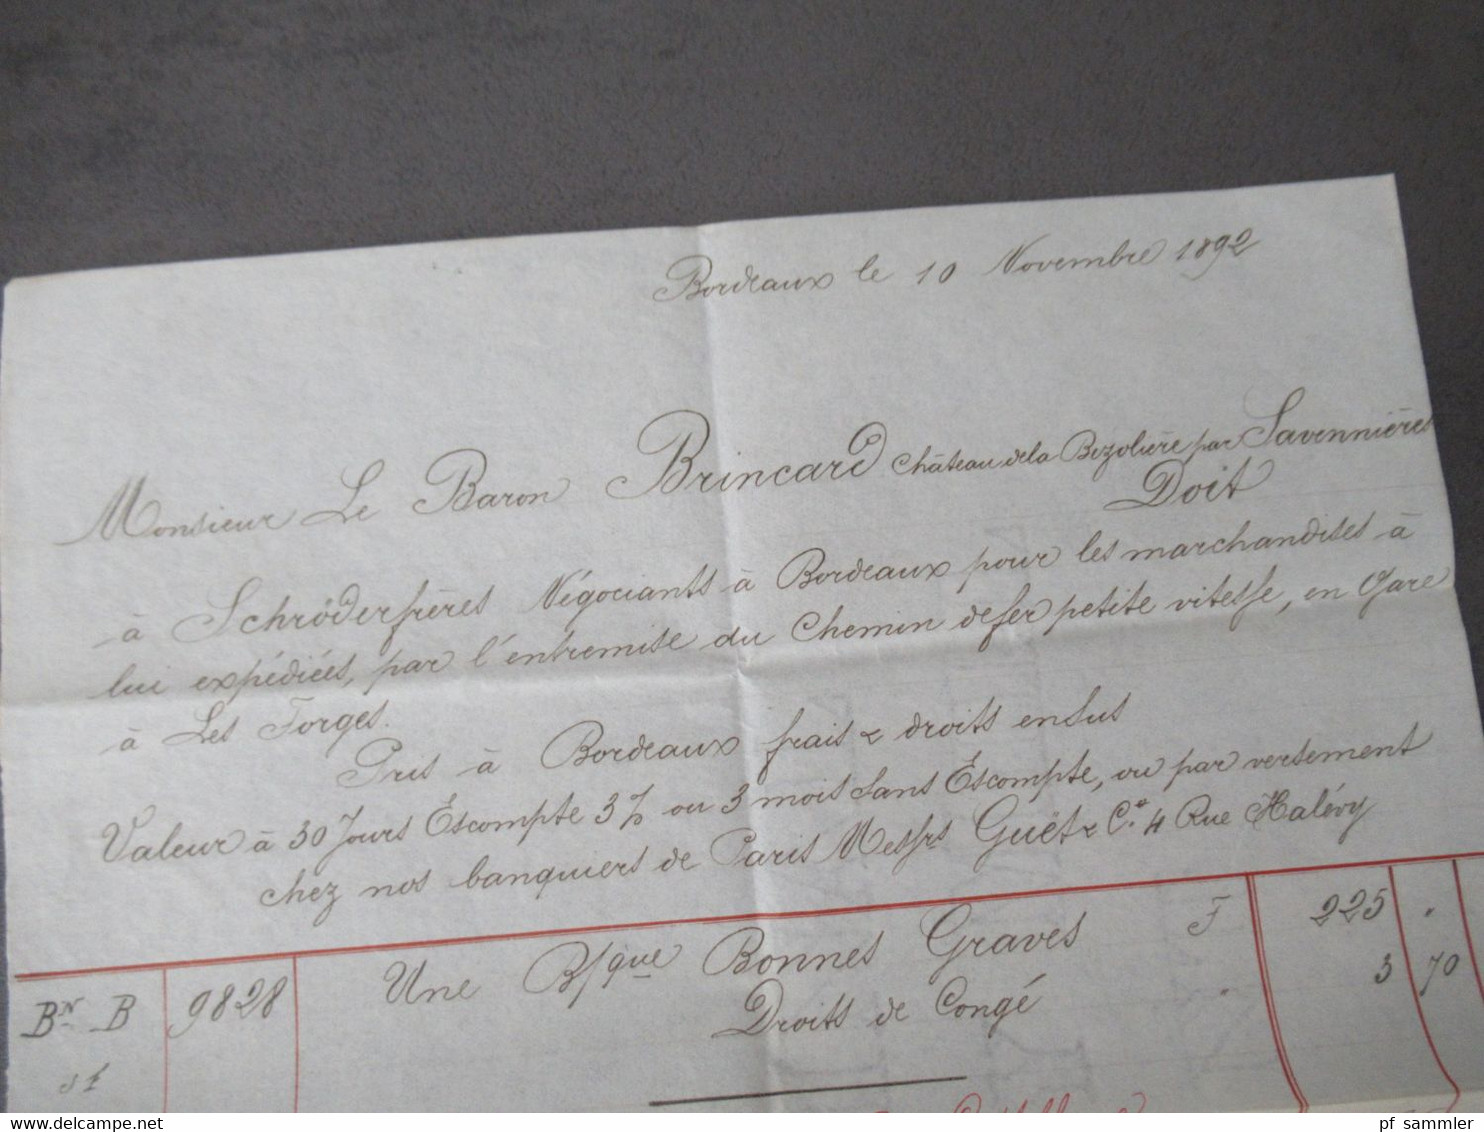 Frankreich 1892 Brief / Inhalt / Rechnung Briefkopf Schröder Freres Bordeaux an den Baron Brincard Chateau la Bizoliere